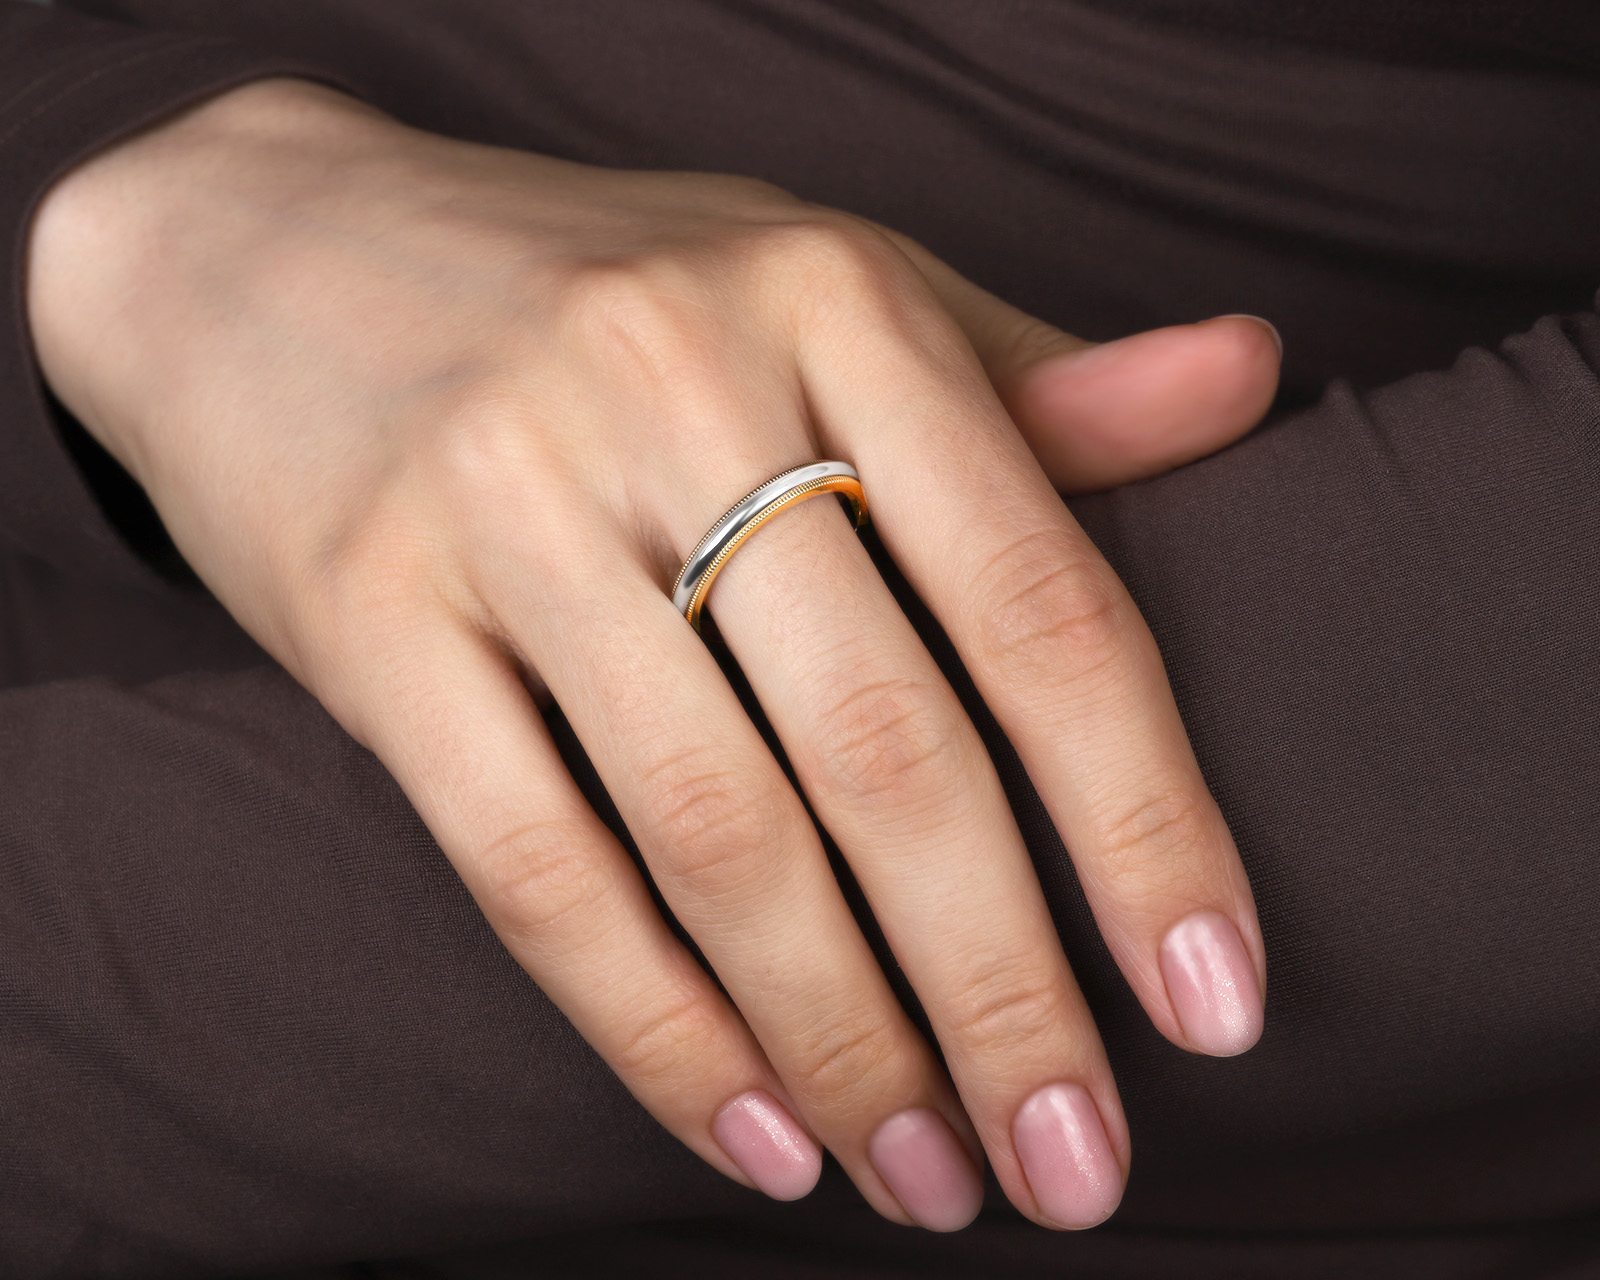 Оригинальное золотое кольцо Tiffany&Co Milgrain